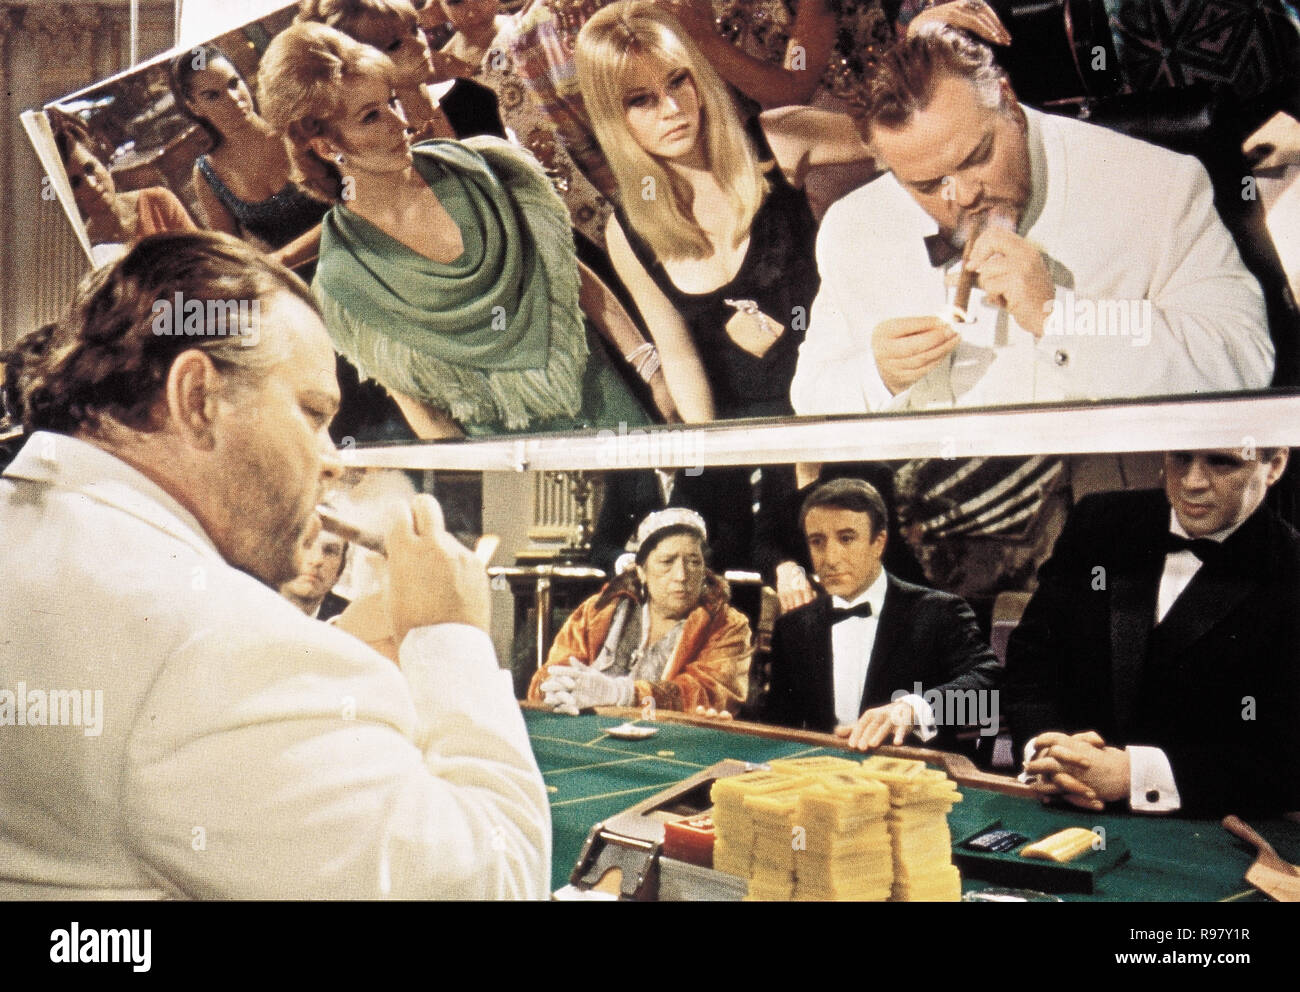 Film Original Titre : Casino Royale. Titre en anglais : 007, JAMES BOND : Casino  Royale. Année : 1967. Réalisateur :